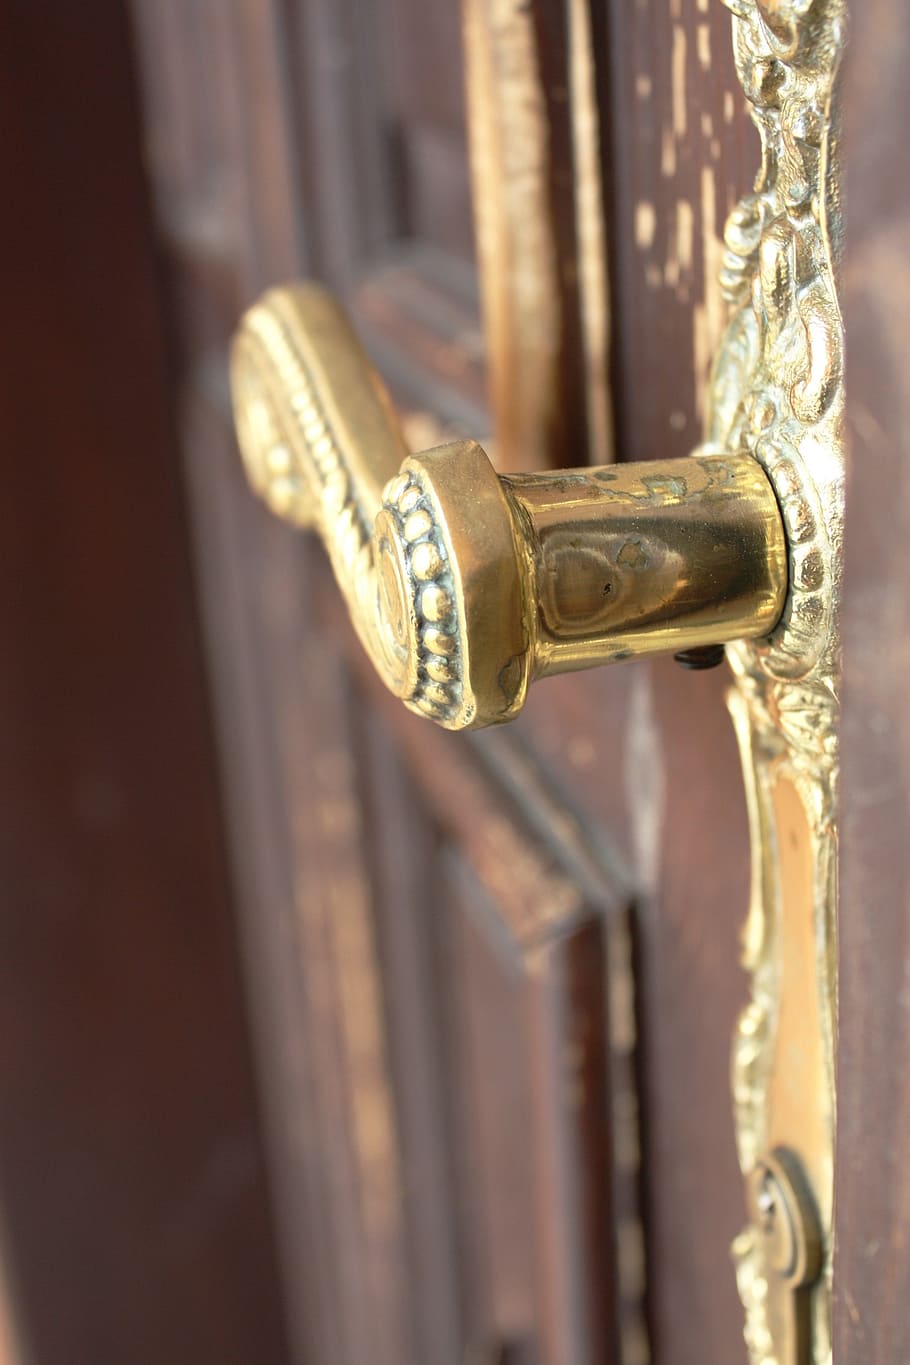 door handle, the door, open, castle, key, press, decorative, wood, engraver, close-up